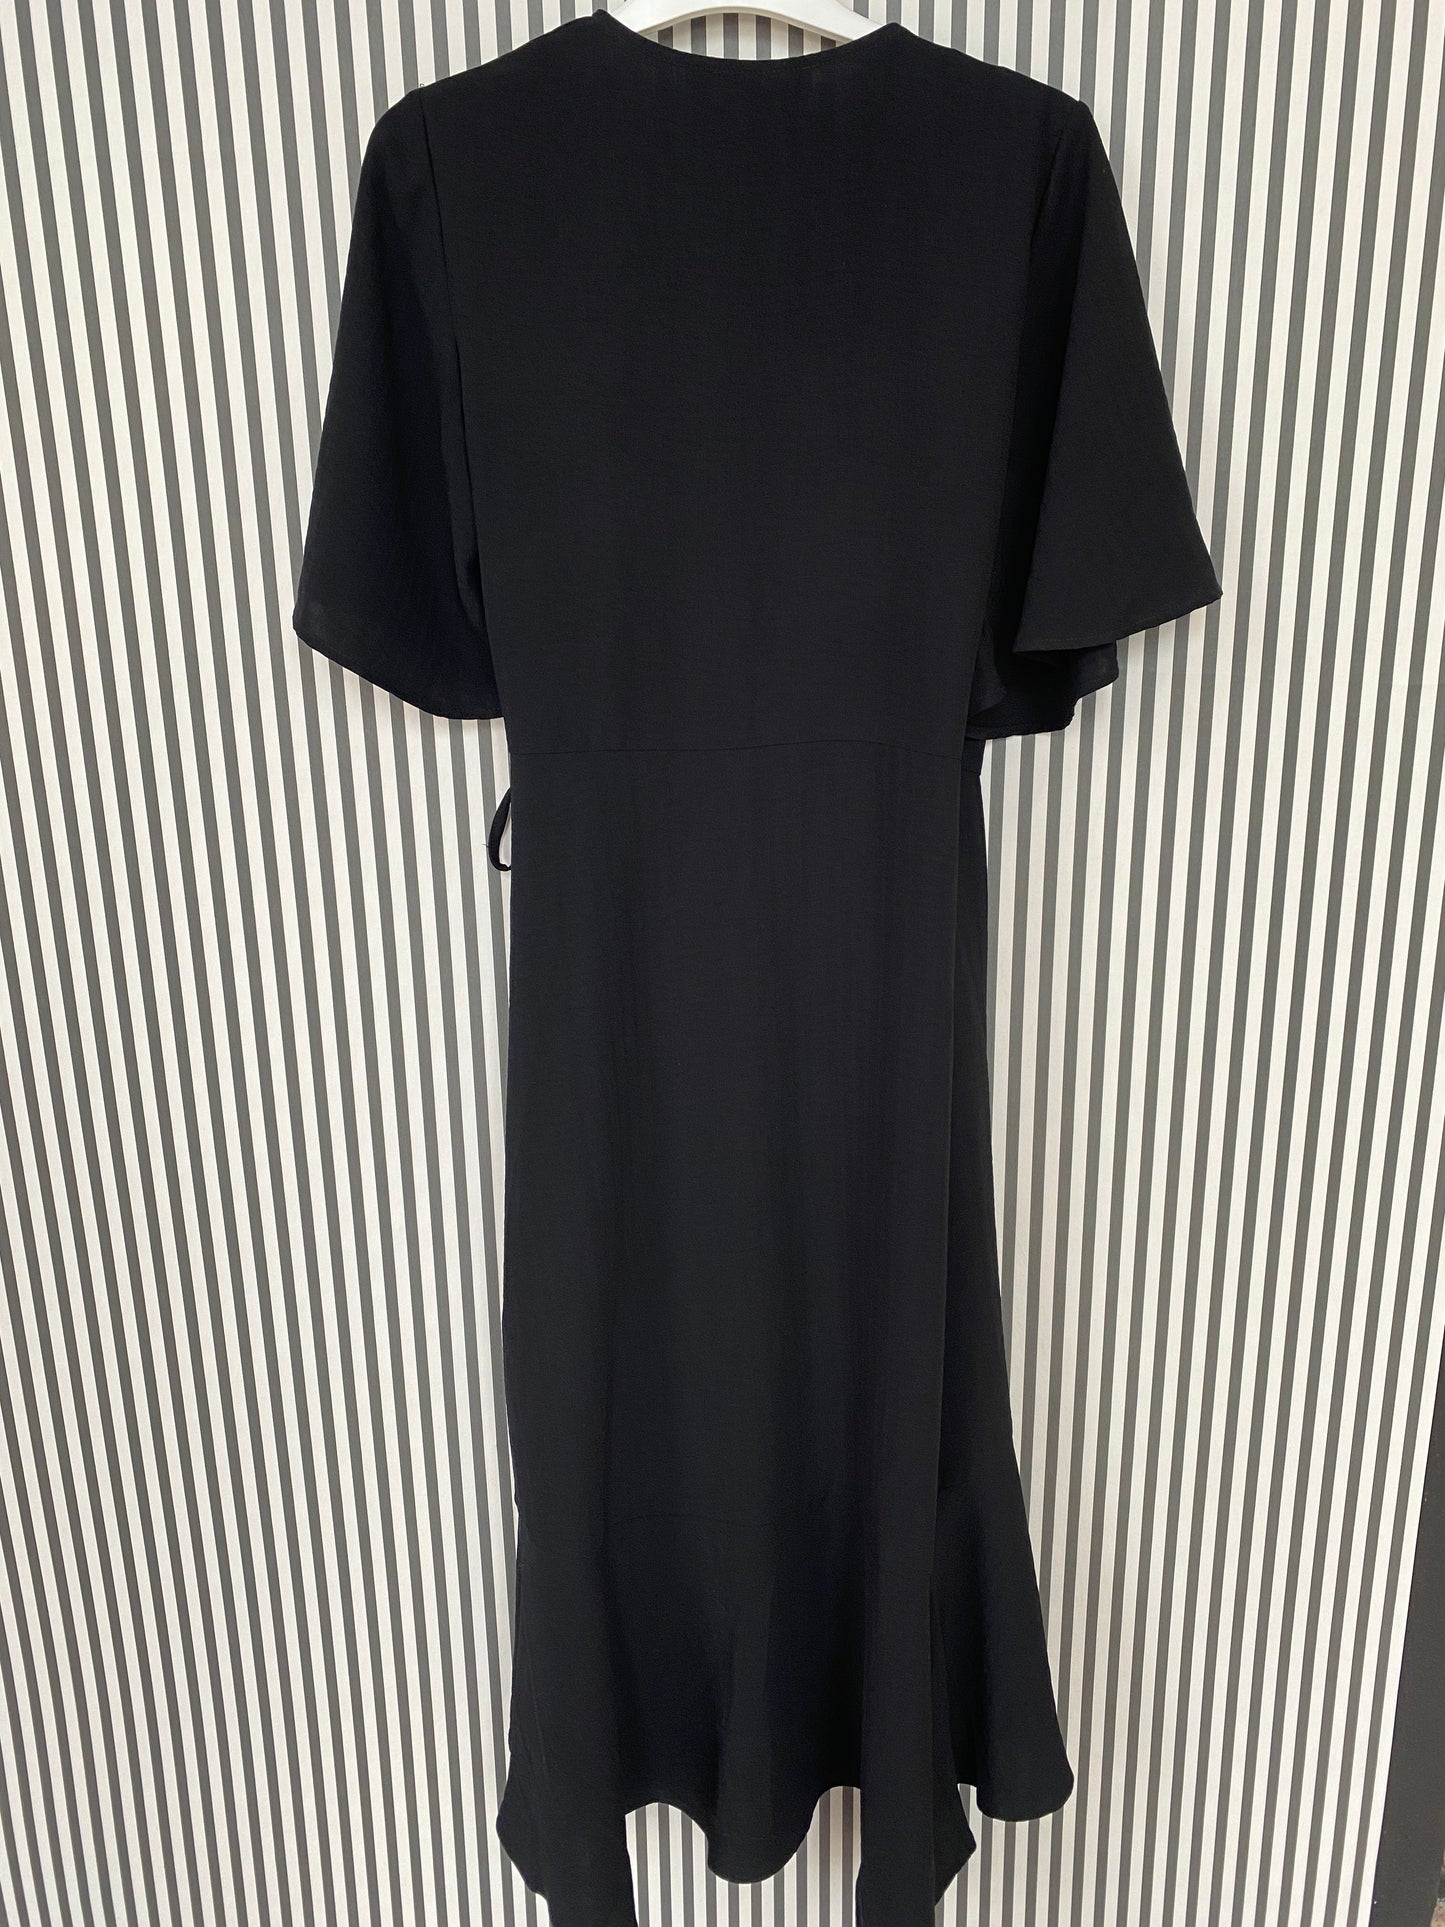 CARIN WESTER klänning stl. 38 (#103) SH